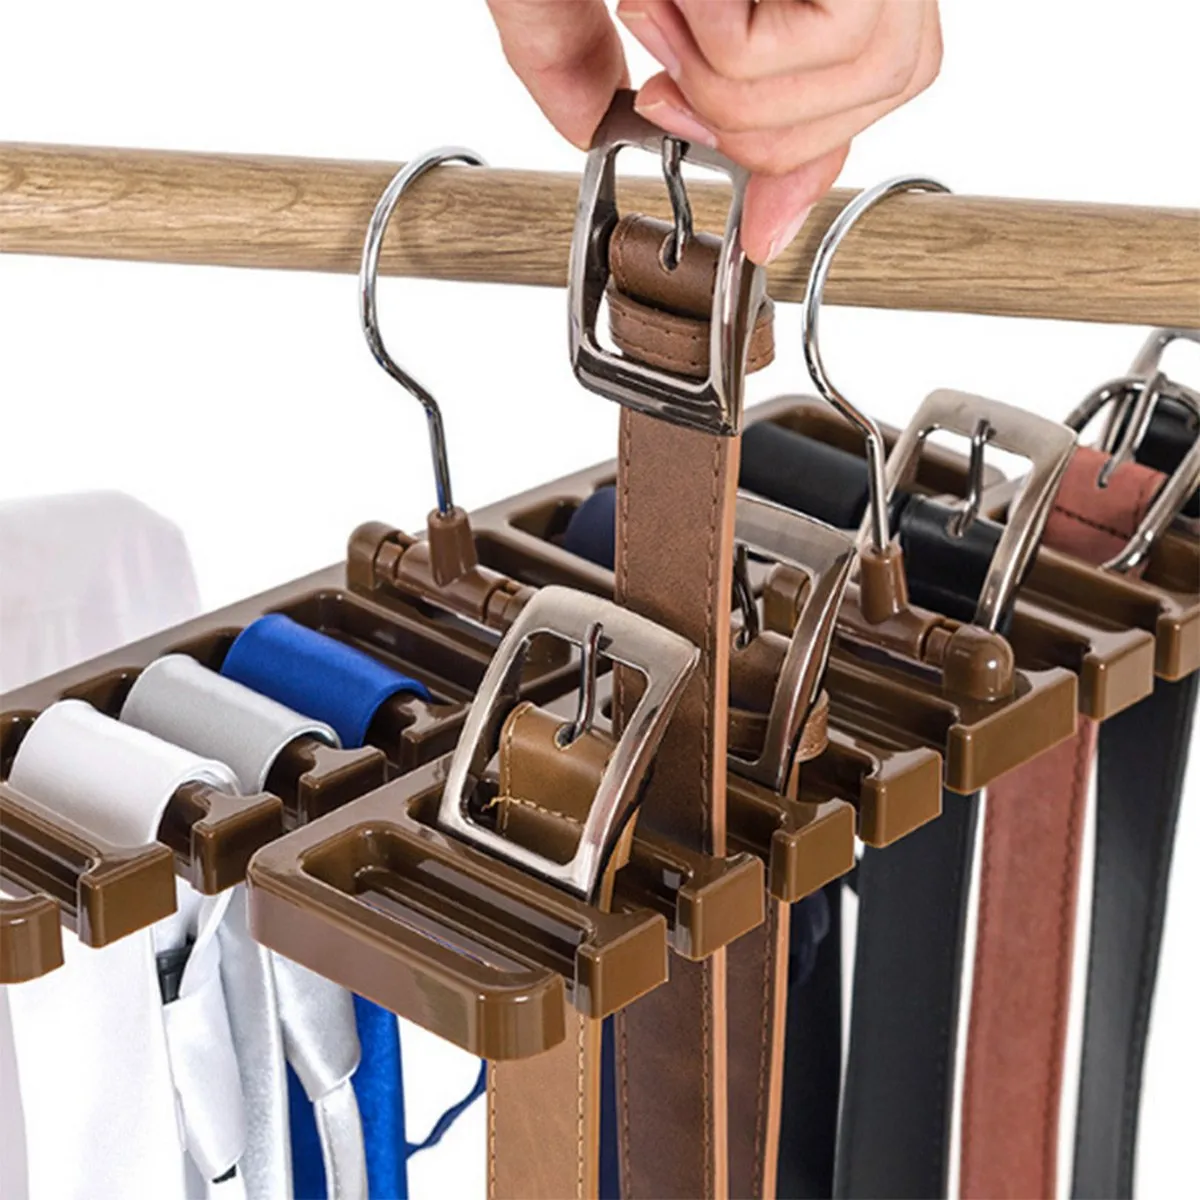 Förpackning med 2 slipsbältesorganisatör förvaringsställ multifuktion roterande slipsar halsdukhängare hållare garderob organisation garderob efterbehandling rack